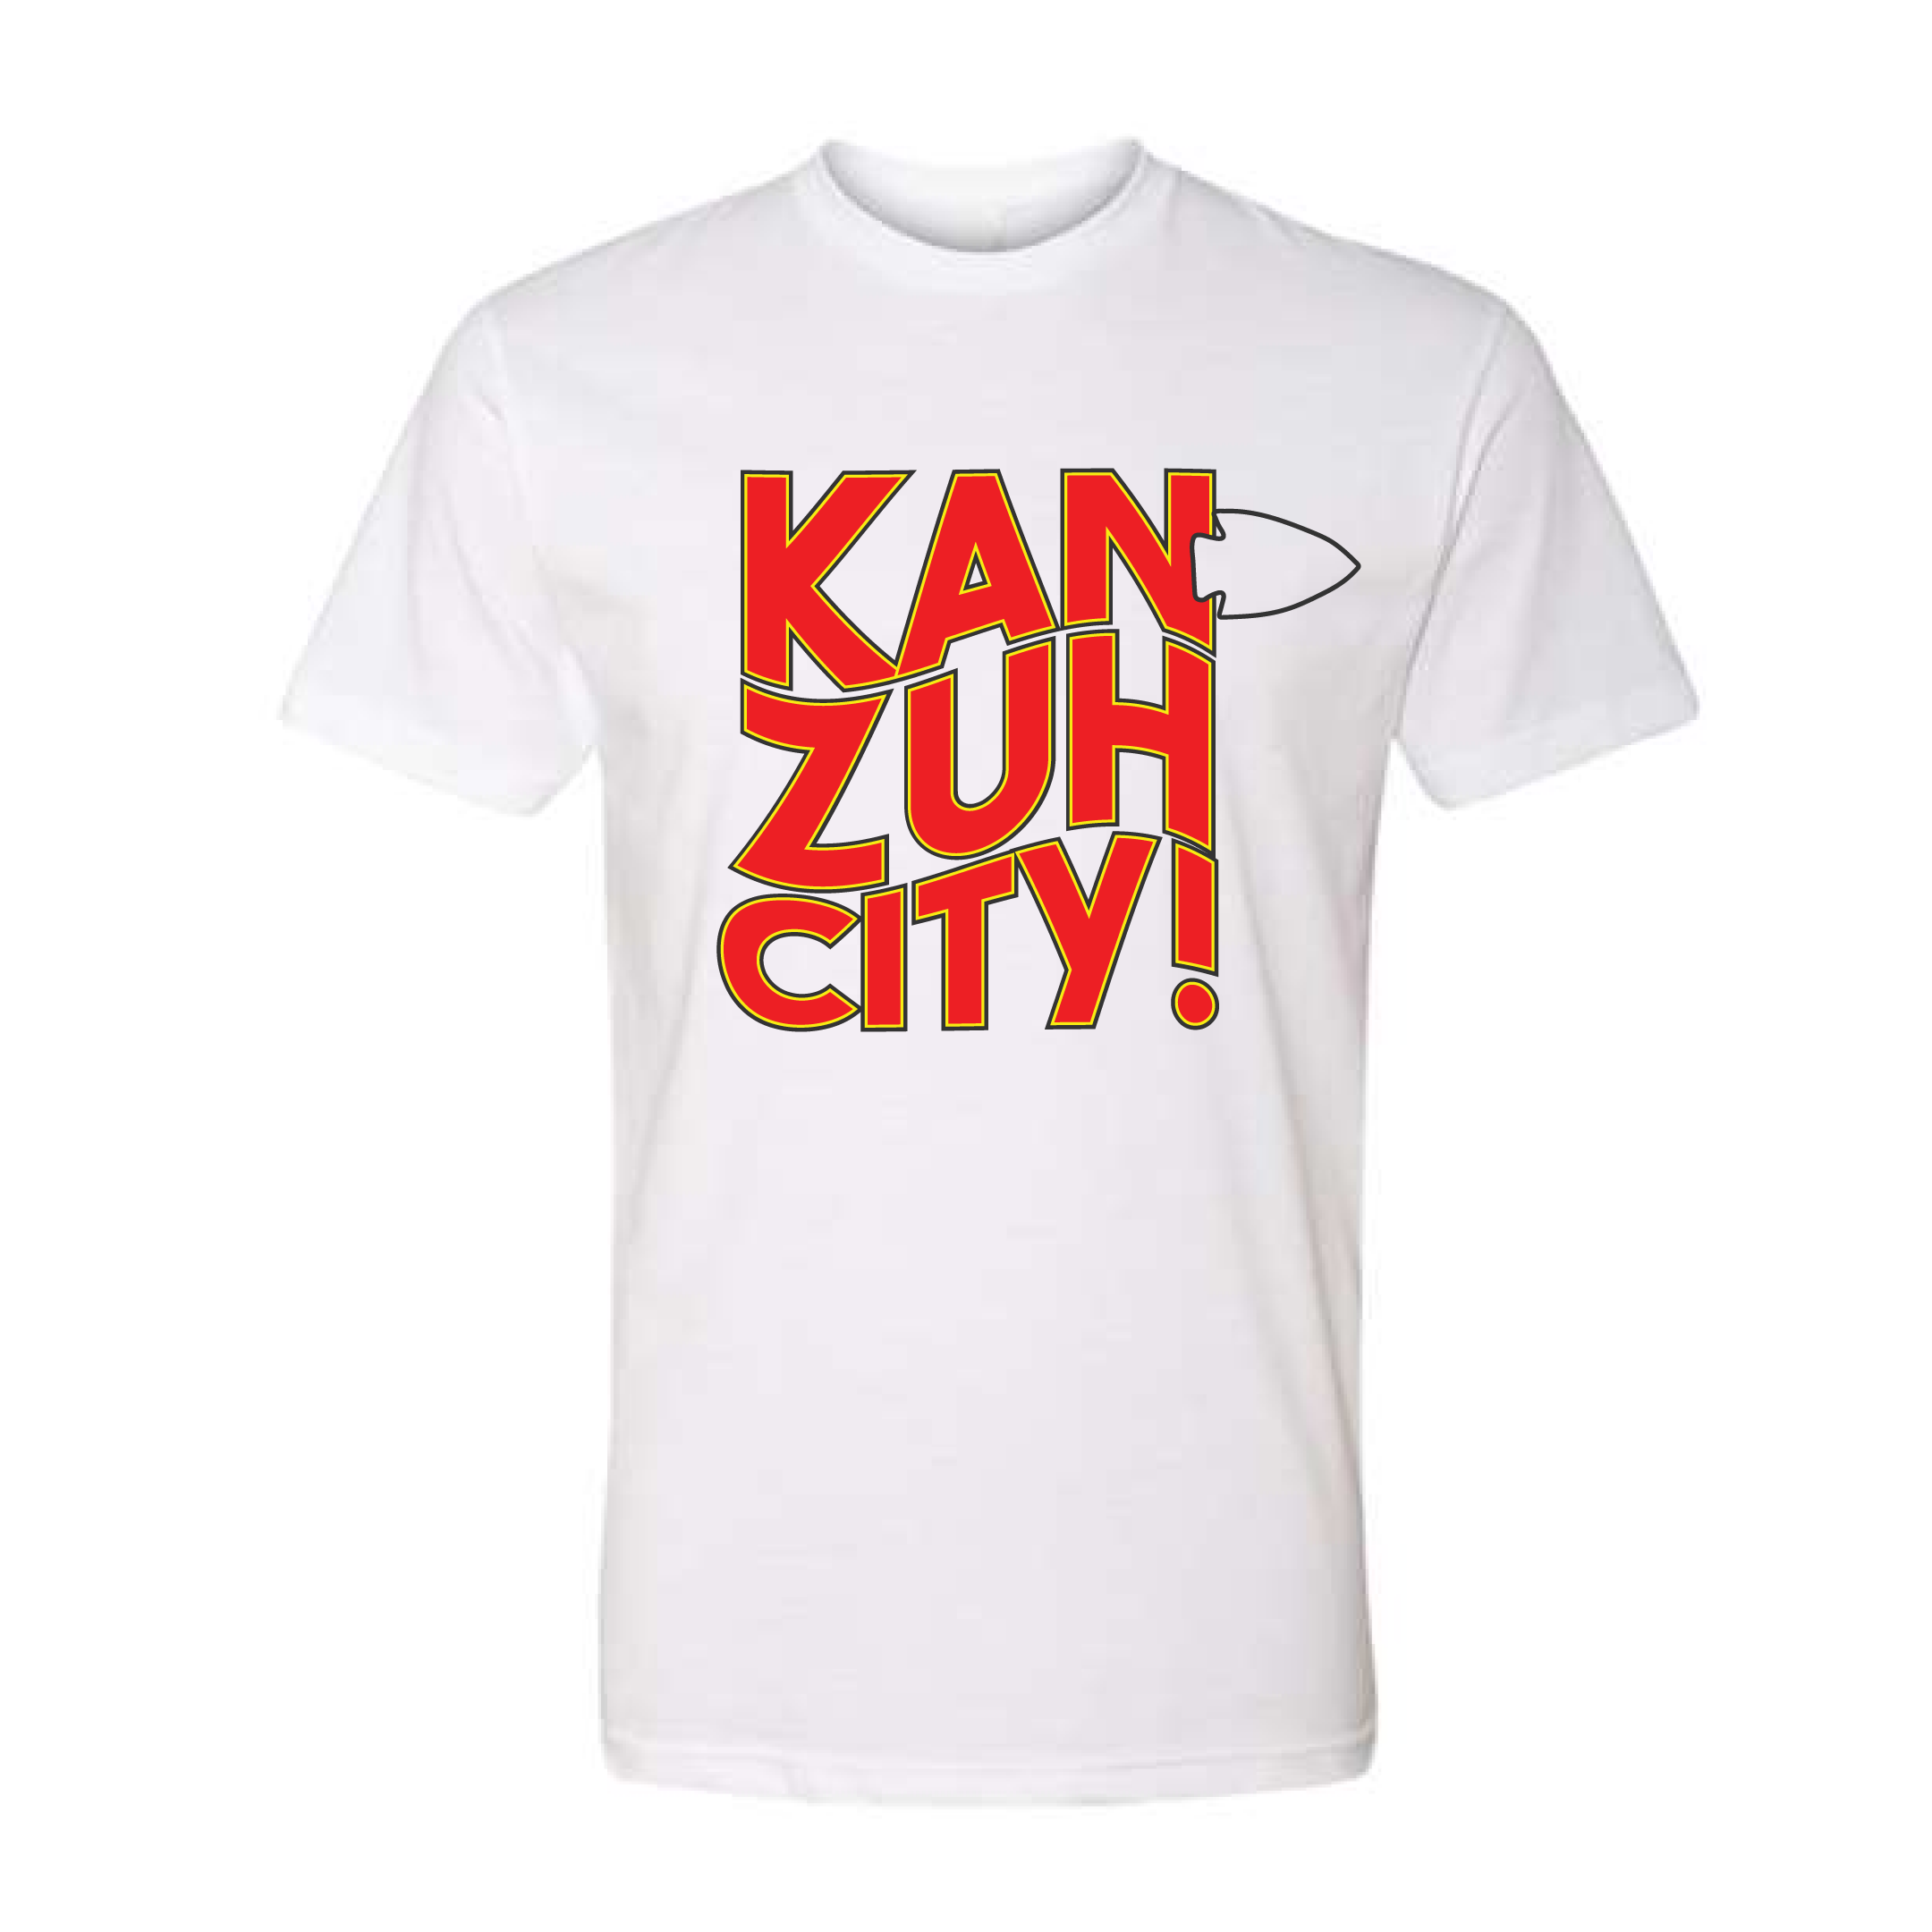 Kan-Zuh-City!